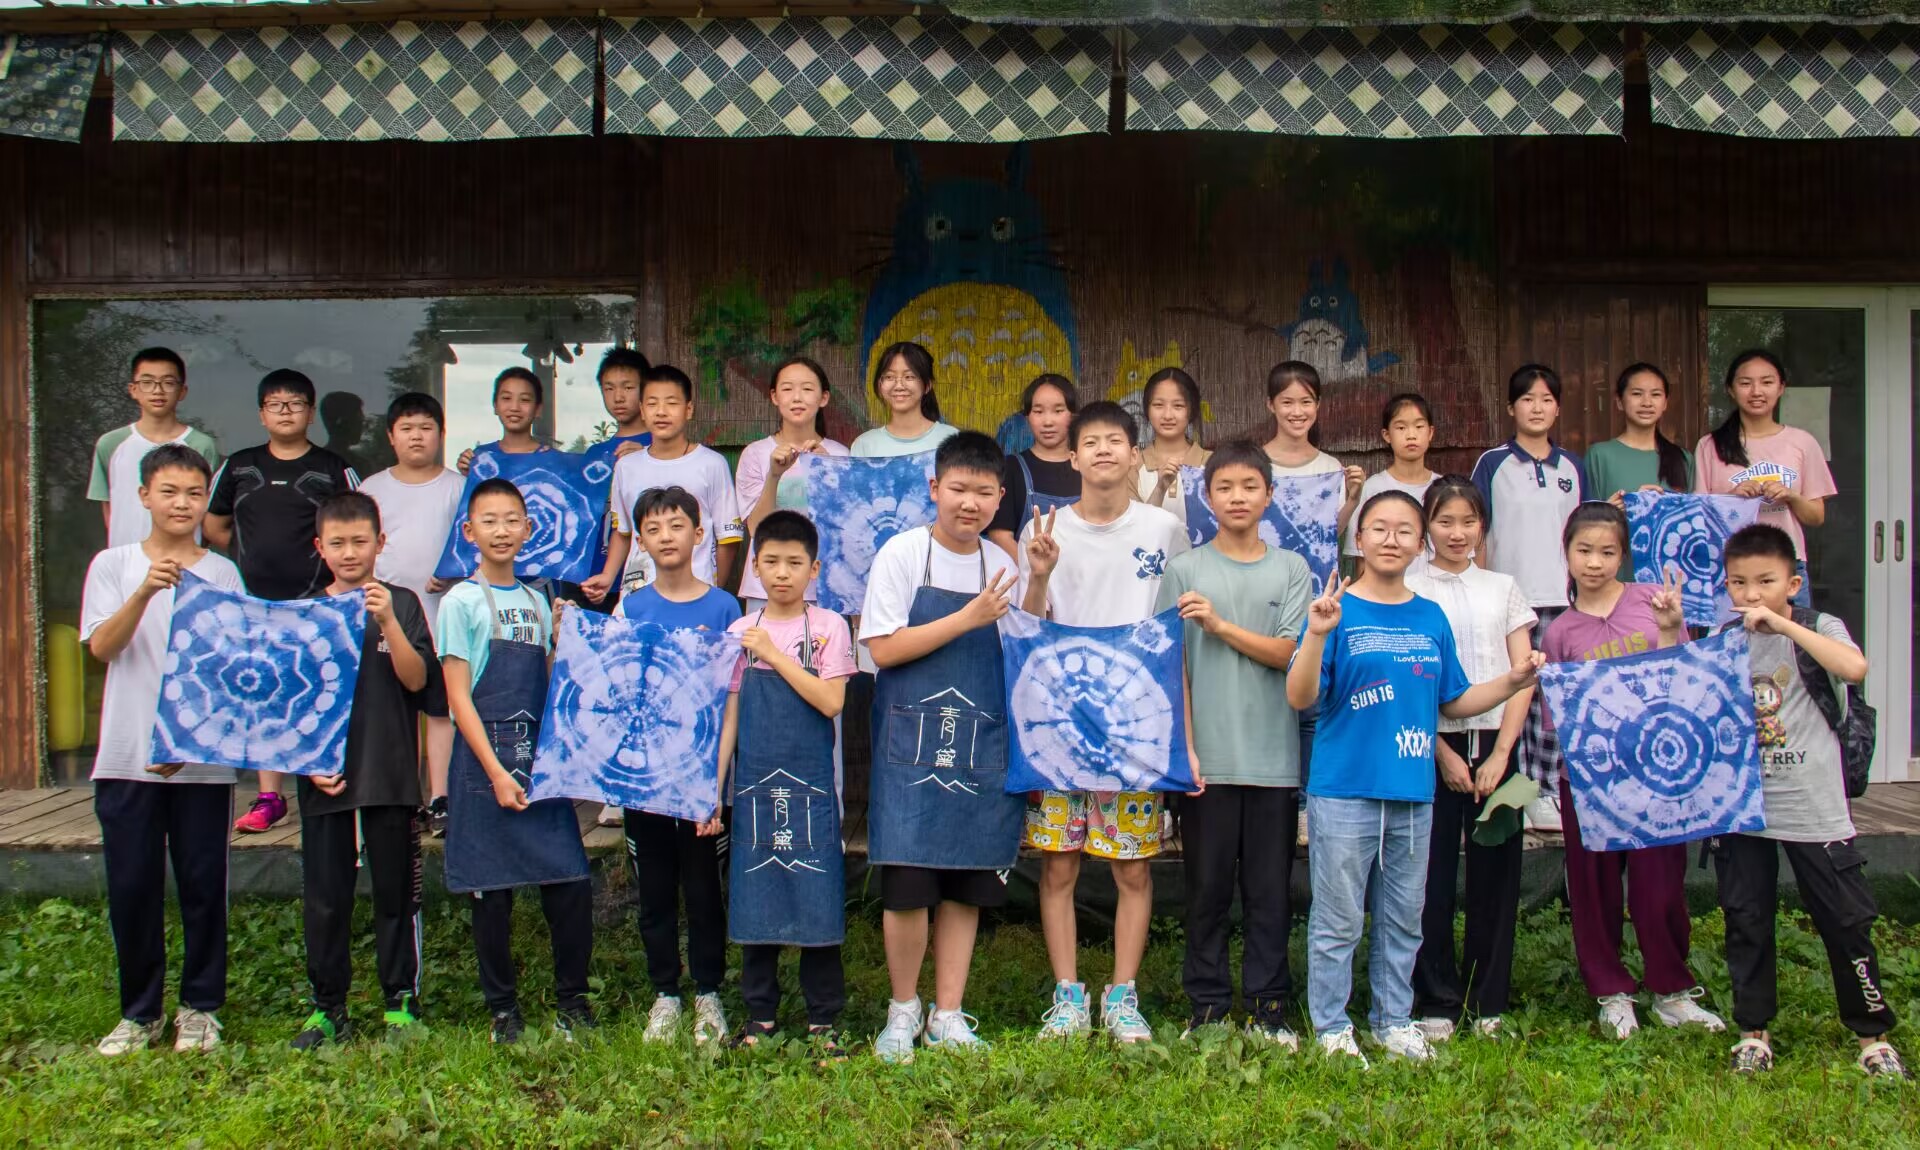 图为甘溪学校学生进行扎染作品展示的合照。四川文化网通讯员张卓冉 提供